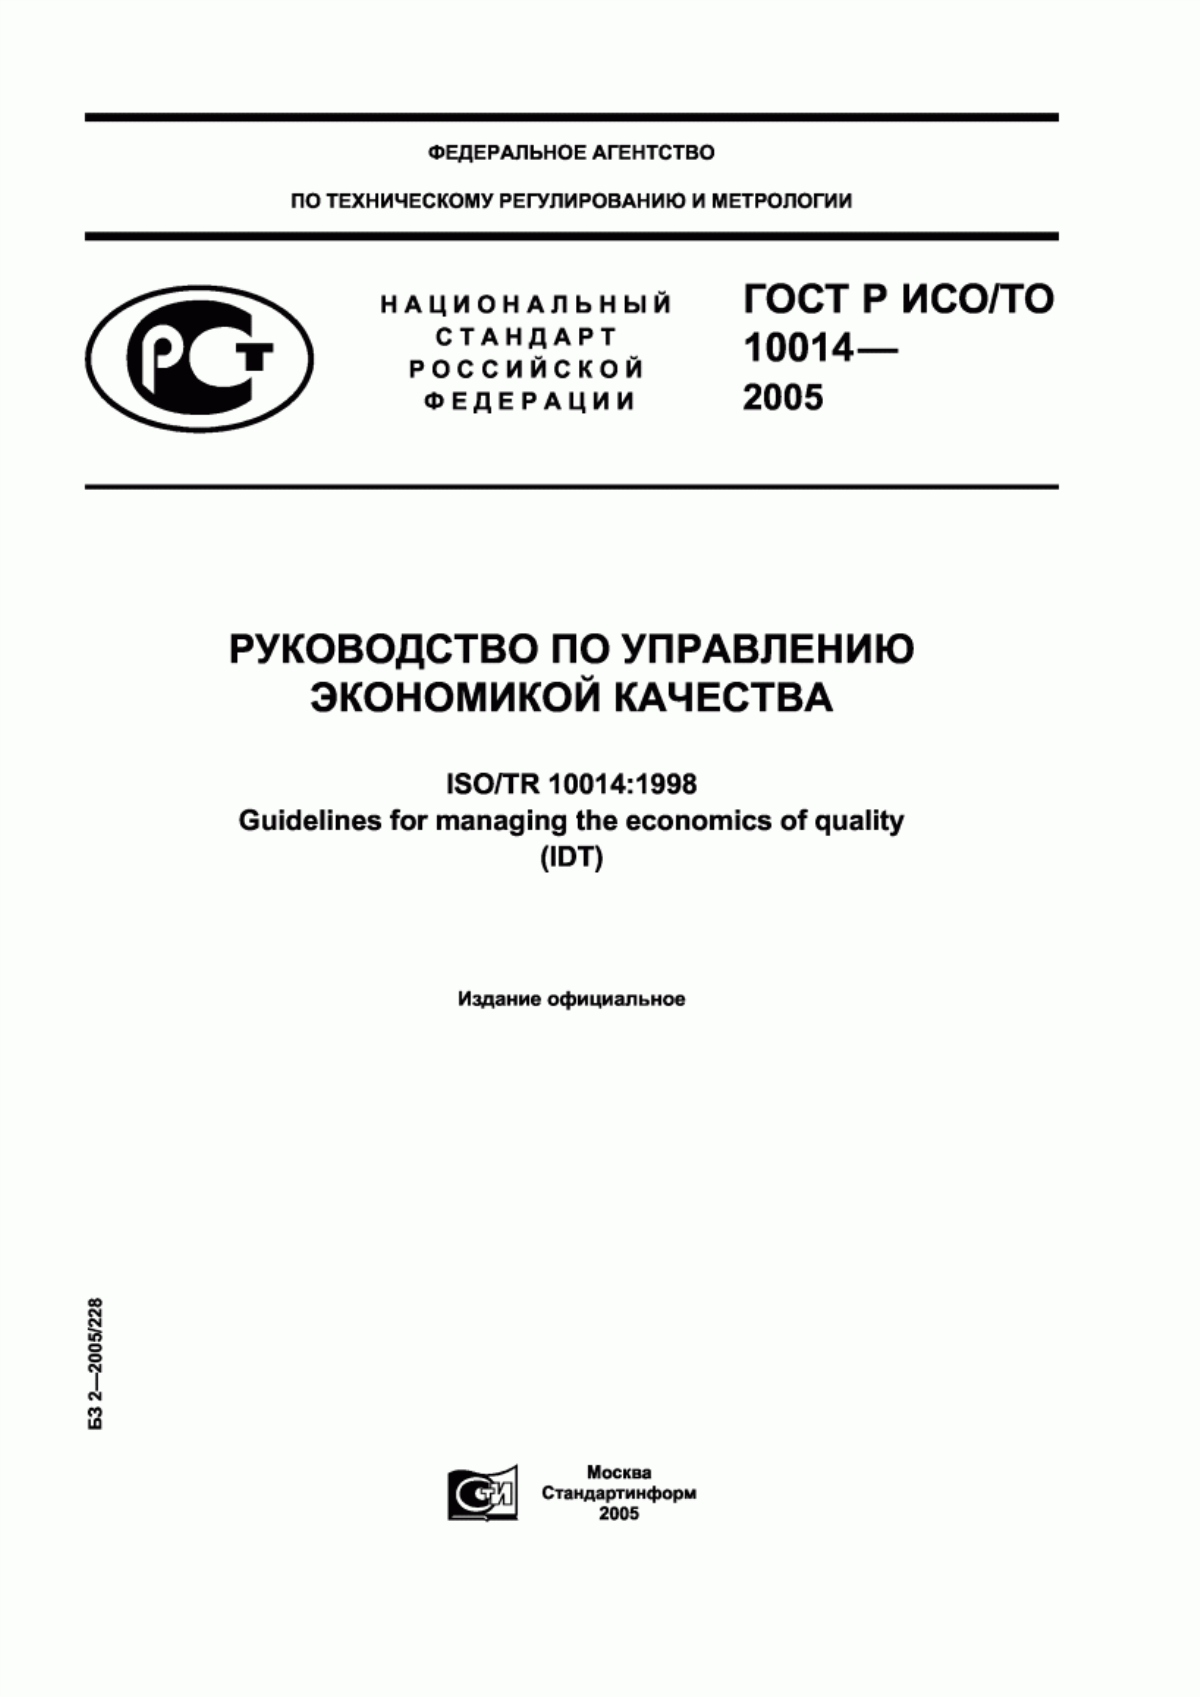 ГОСТ Р ИСО/ТО 10014-2005 Руководство по управлению экономикой качества